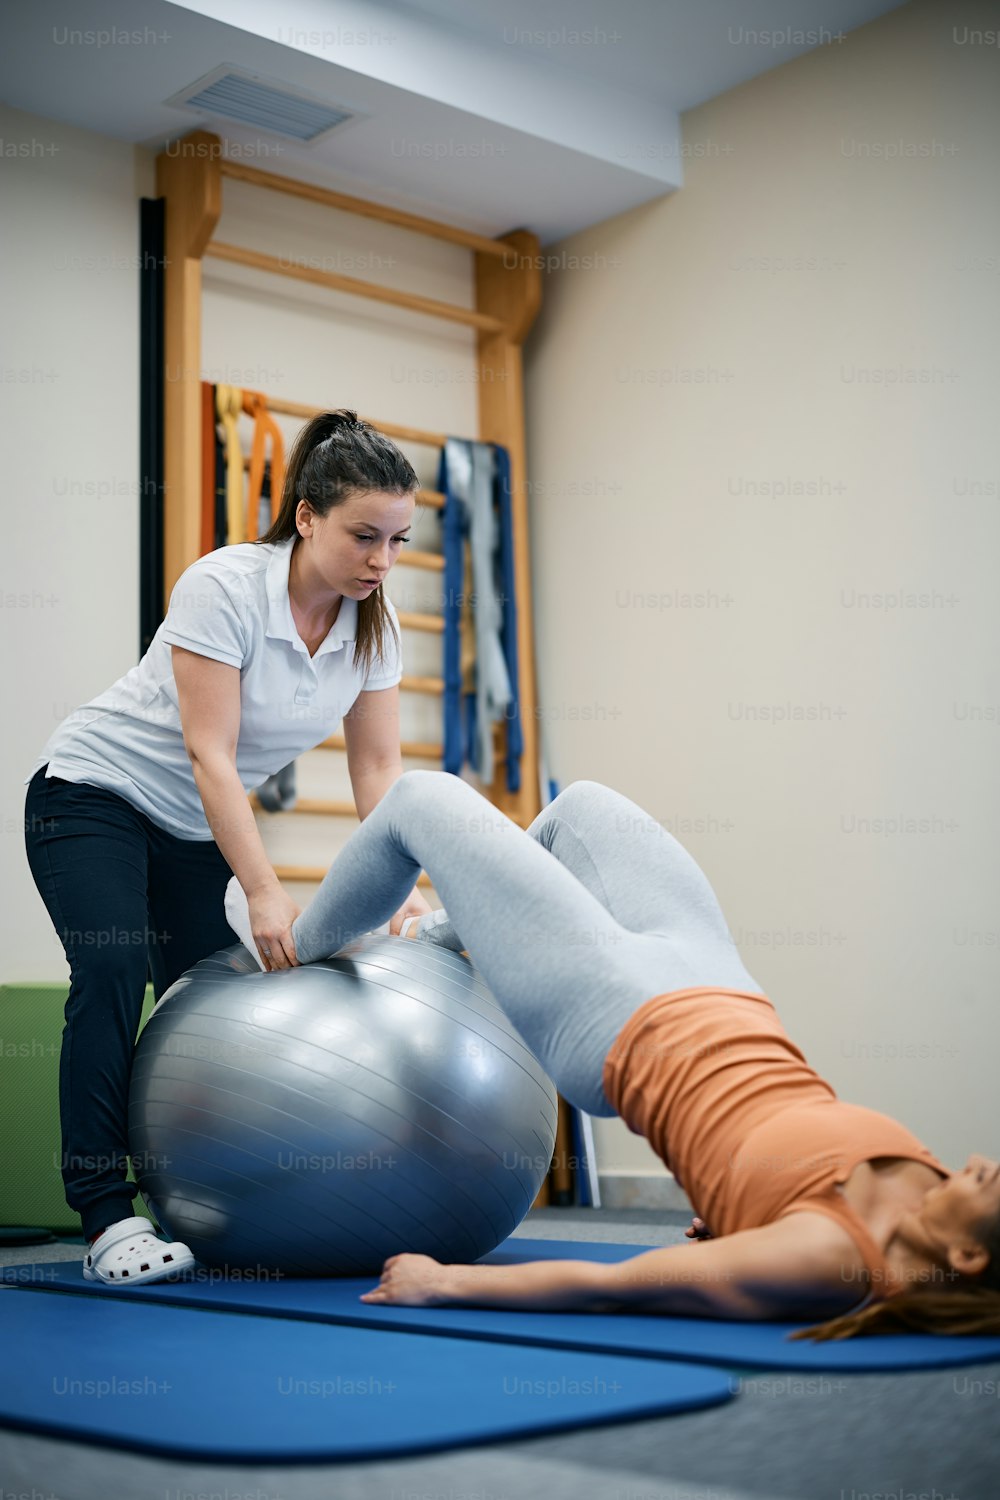 Fisioterapista che utilizza la palla fitness durante il trattamento terapeutico con la paziente femminile presso il centro benessere.